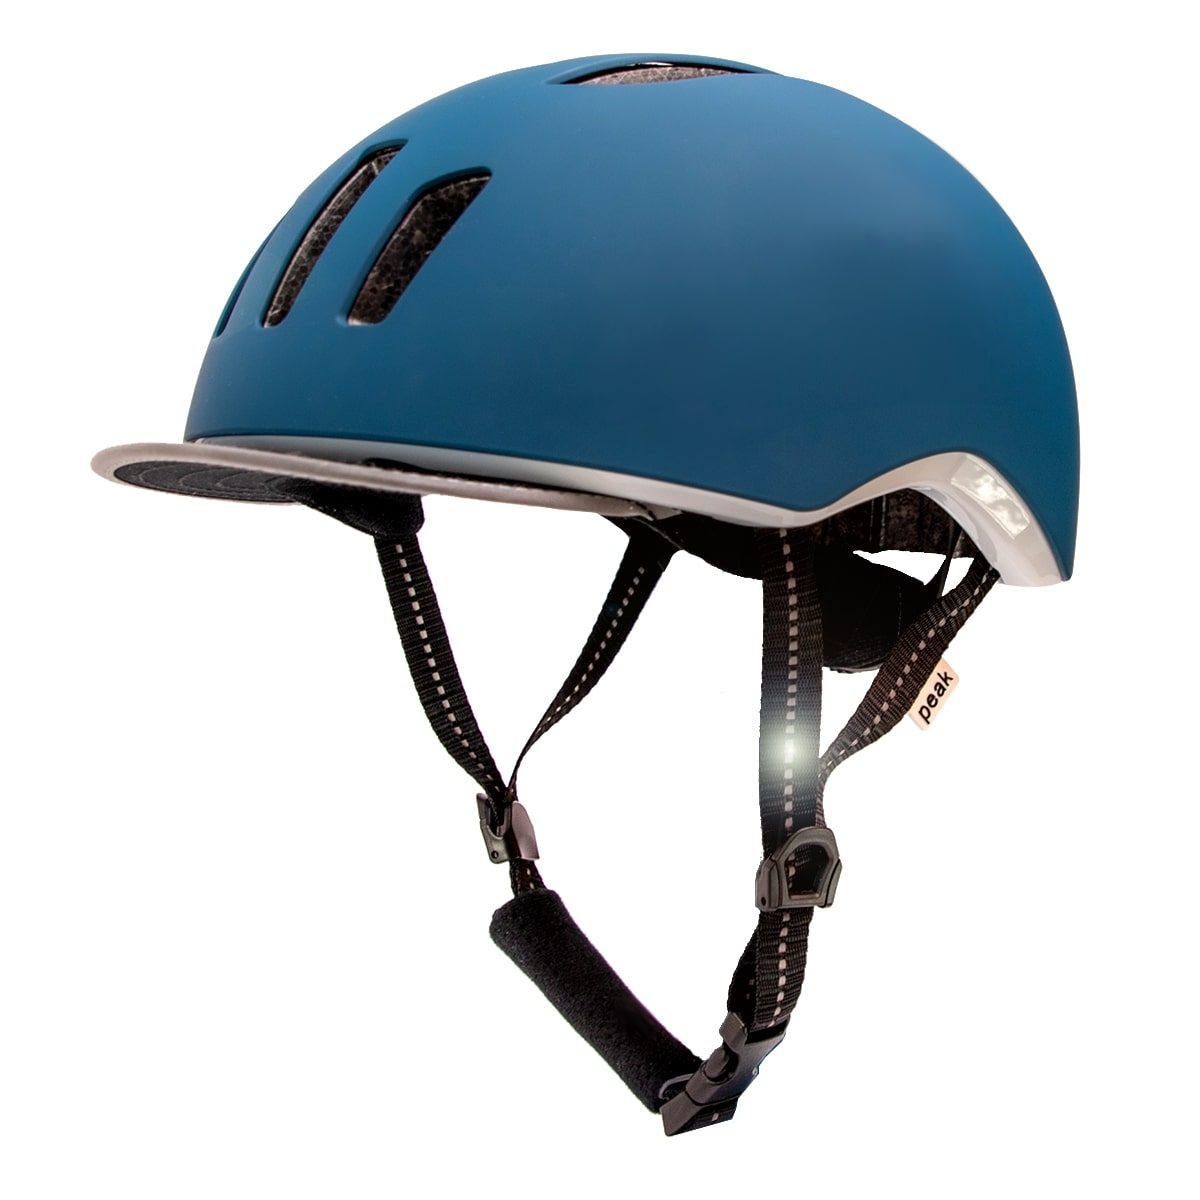 Billede af Crazy Safety Blå/Petrolium cykelhjelm til mænd og kvinder. Aftagelig skygge, refleksstropper og LED lys. M/L 53-59cm. Testet, godkendt og certificeret hos Crazy Safety